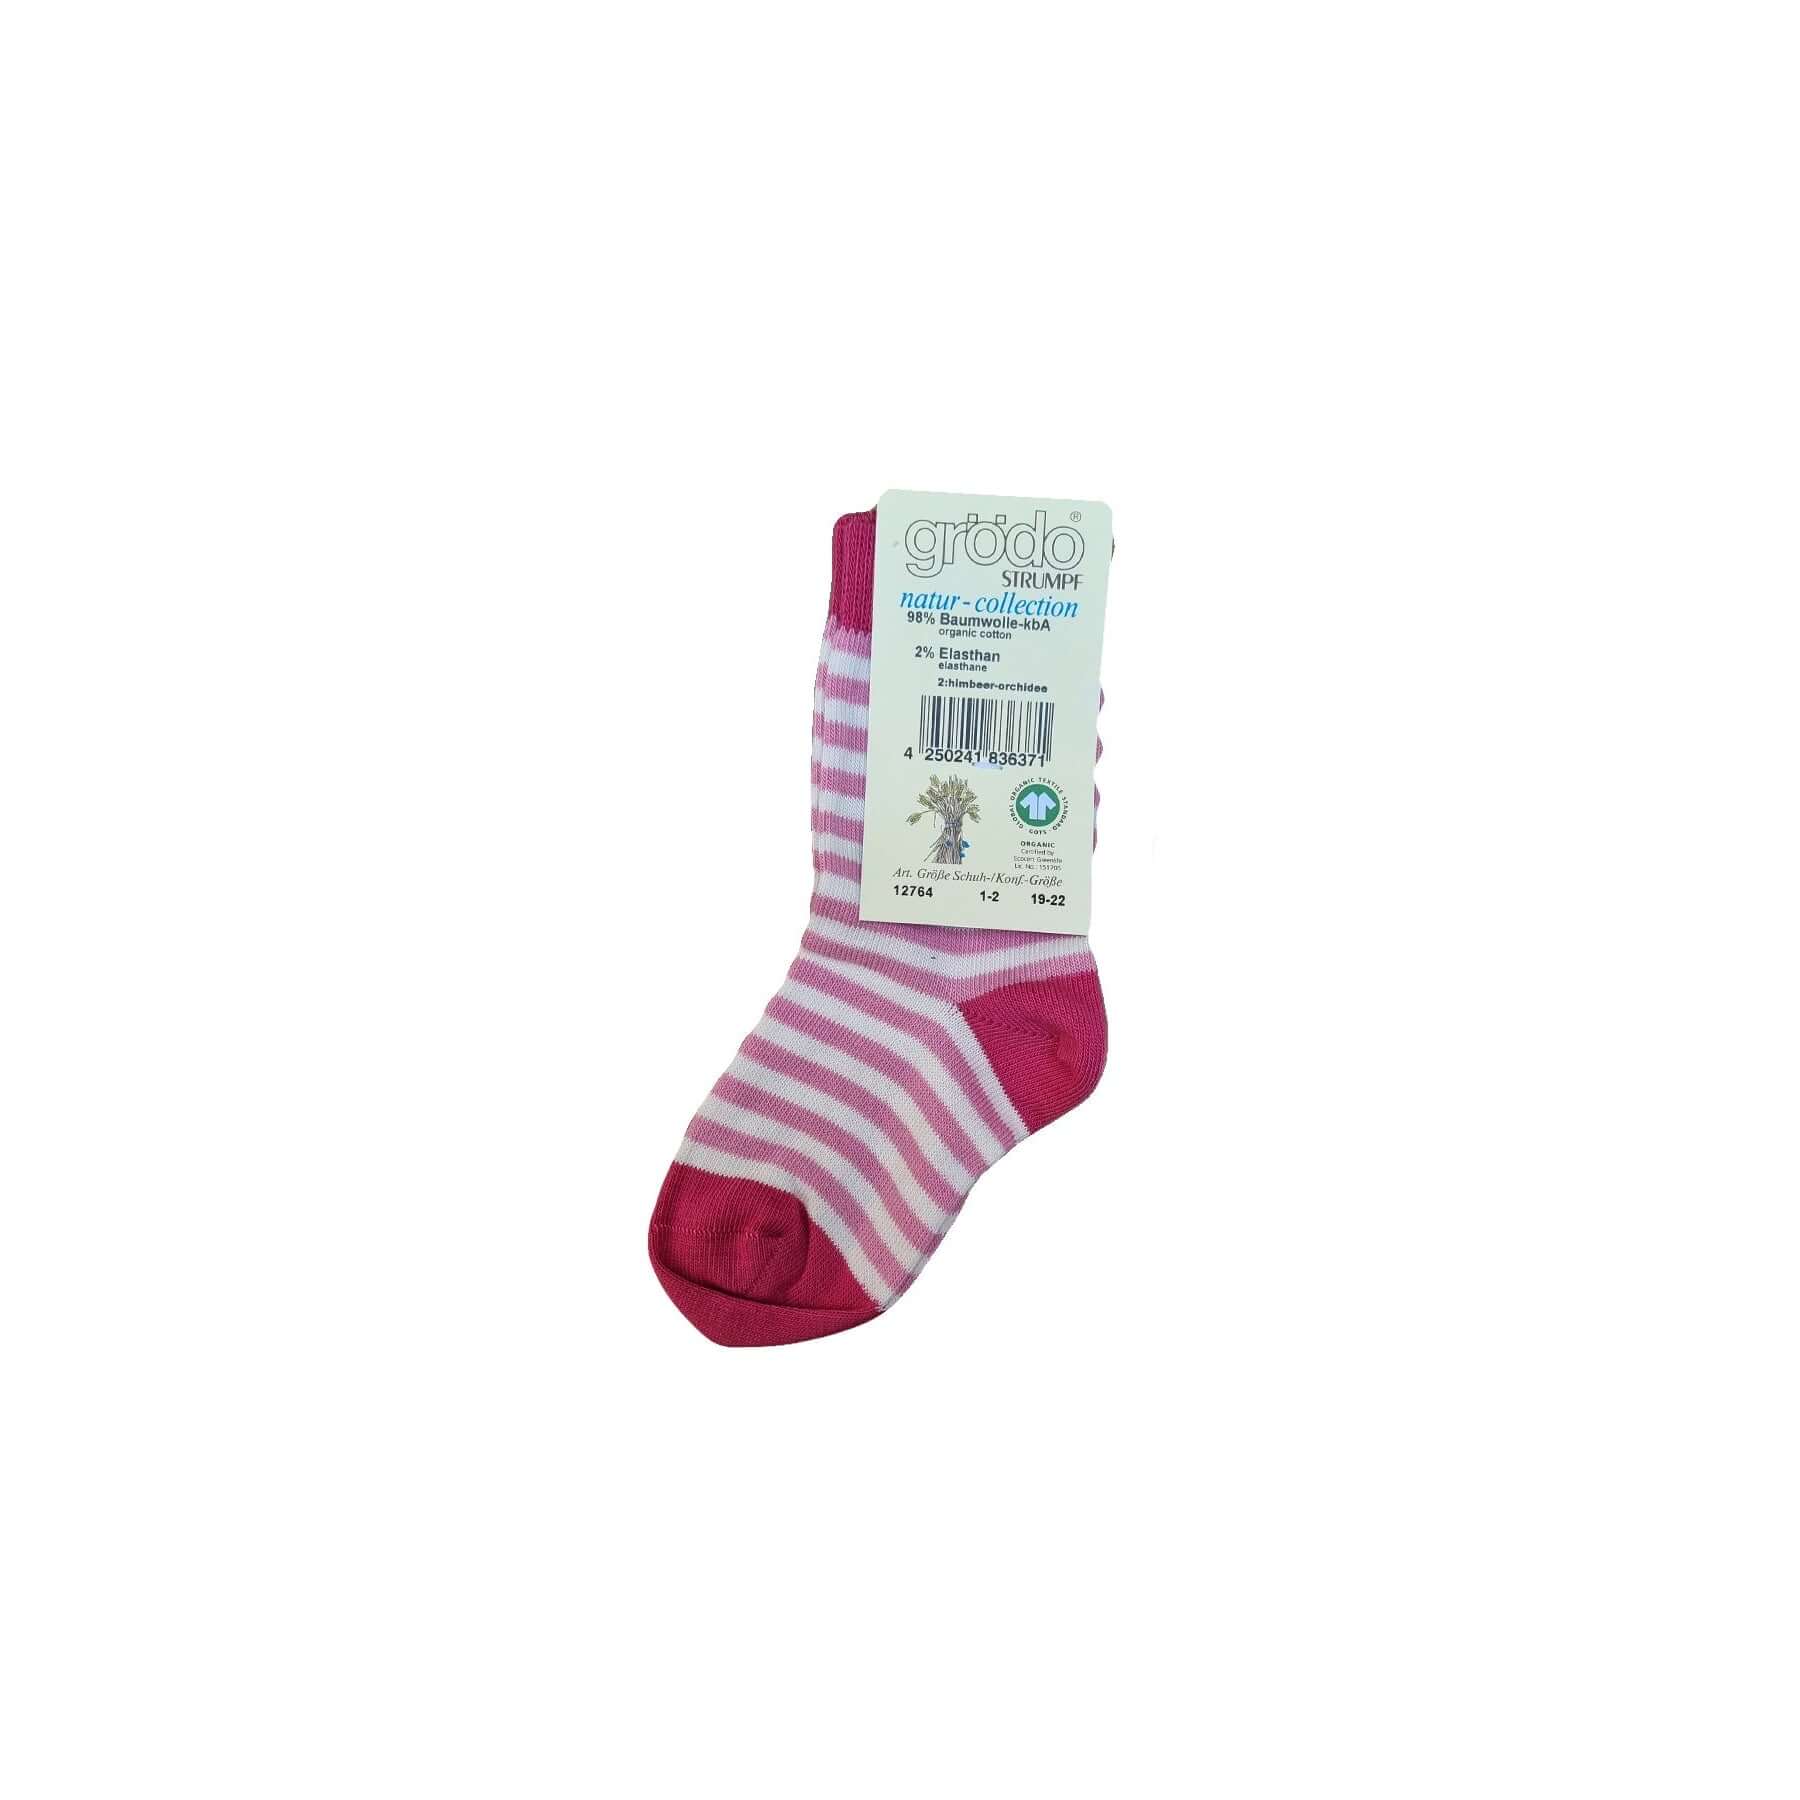 Molemin | Kinder-Socken Gestreift Baumwolle | von Grödo